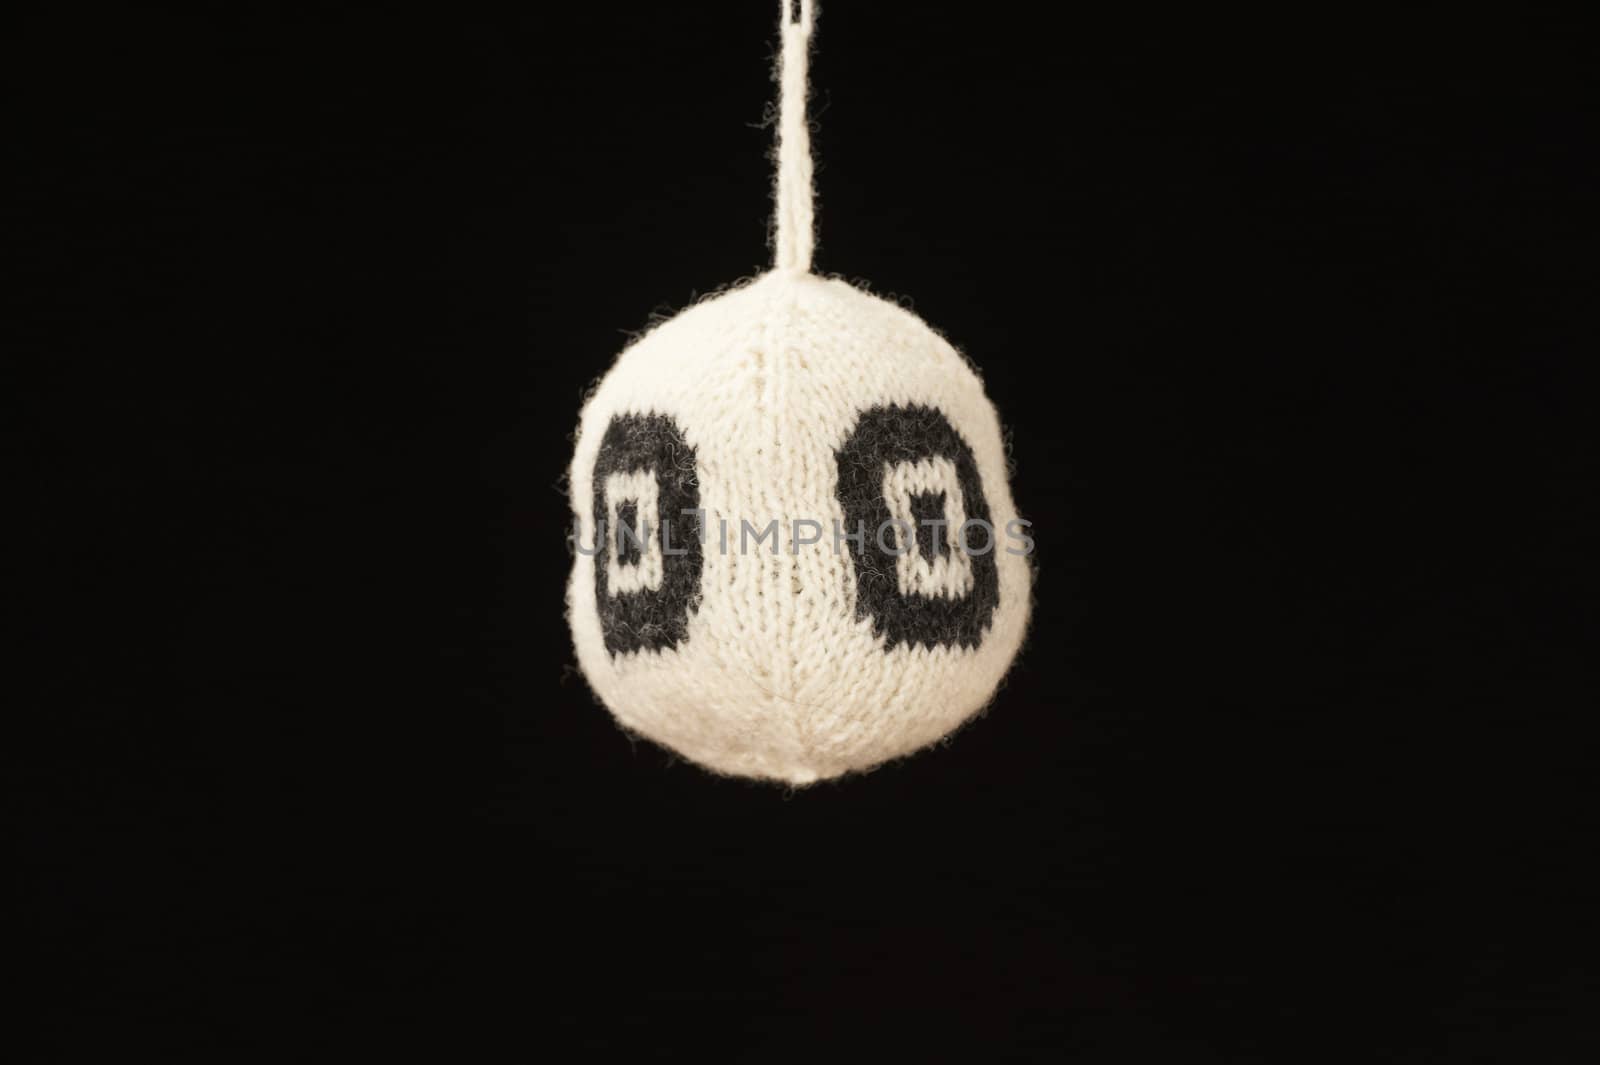 Knitted ball by Eydfinnur